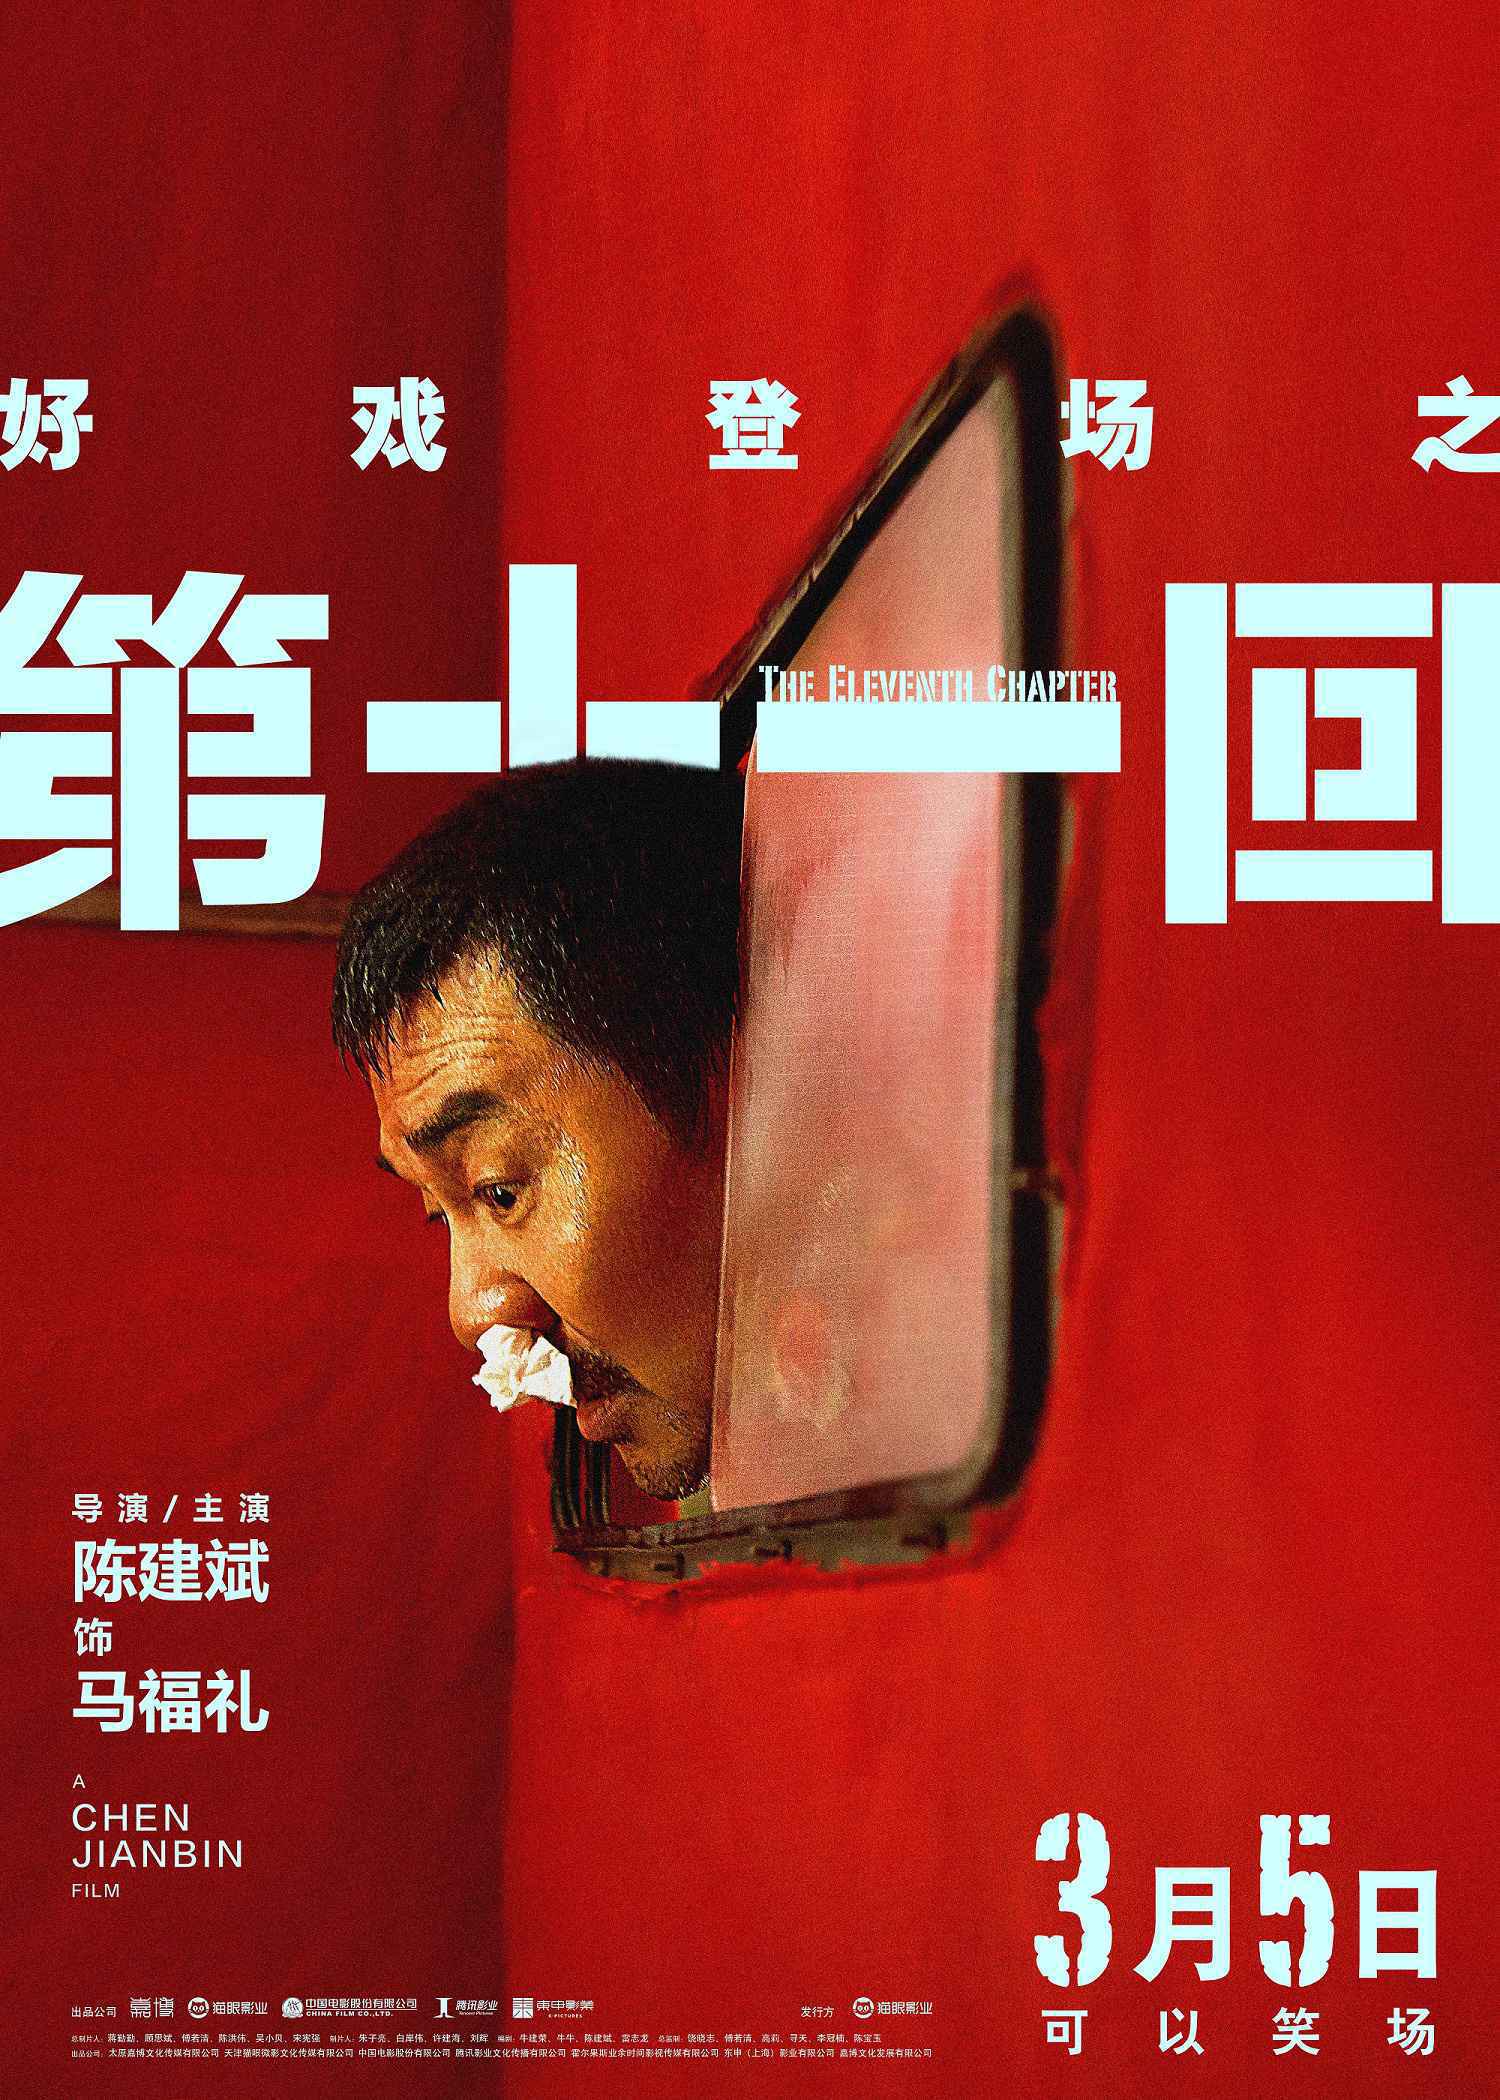 喜剧电影《第十一回》发角色海报 陈建斌周迅新形象引期待